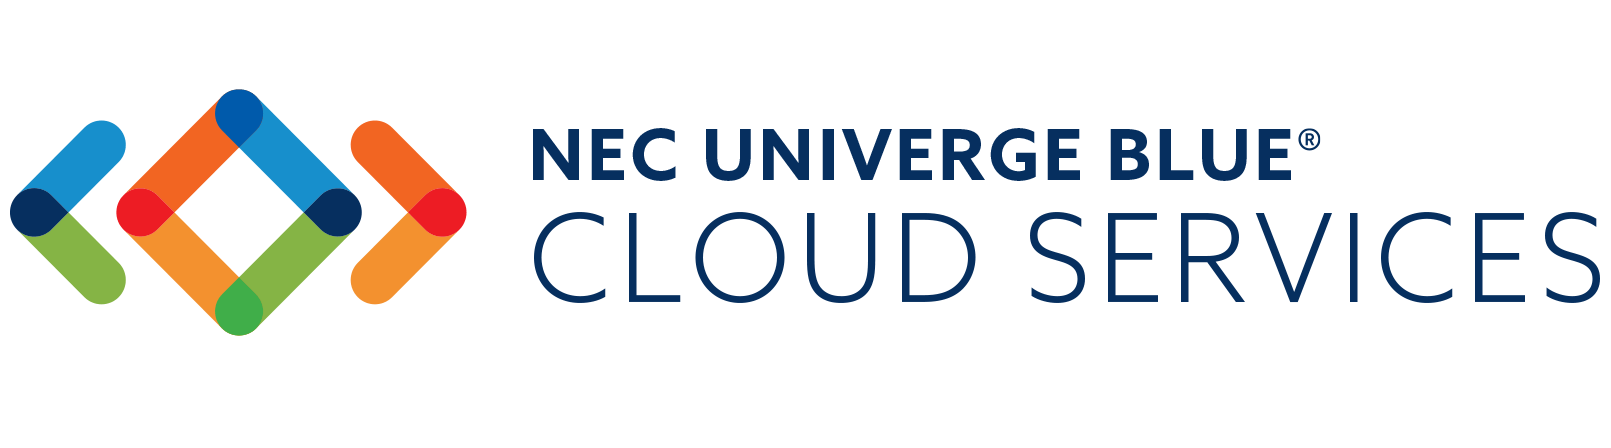 NEC UNIVERGE BLUE® CONNECT